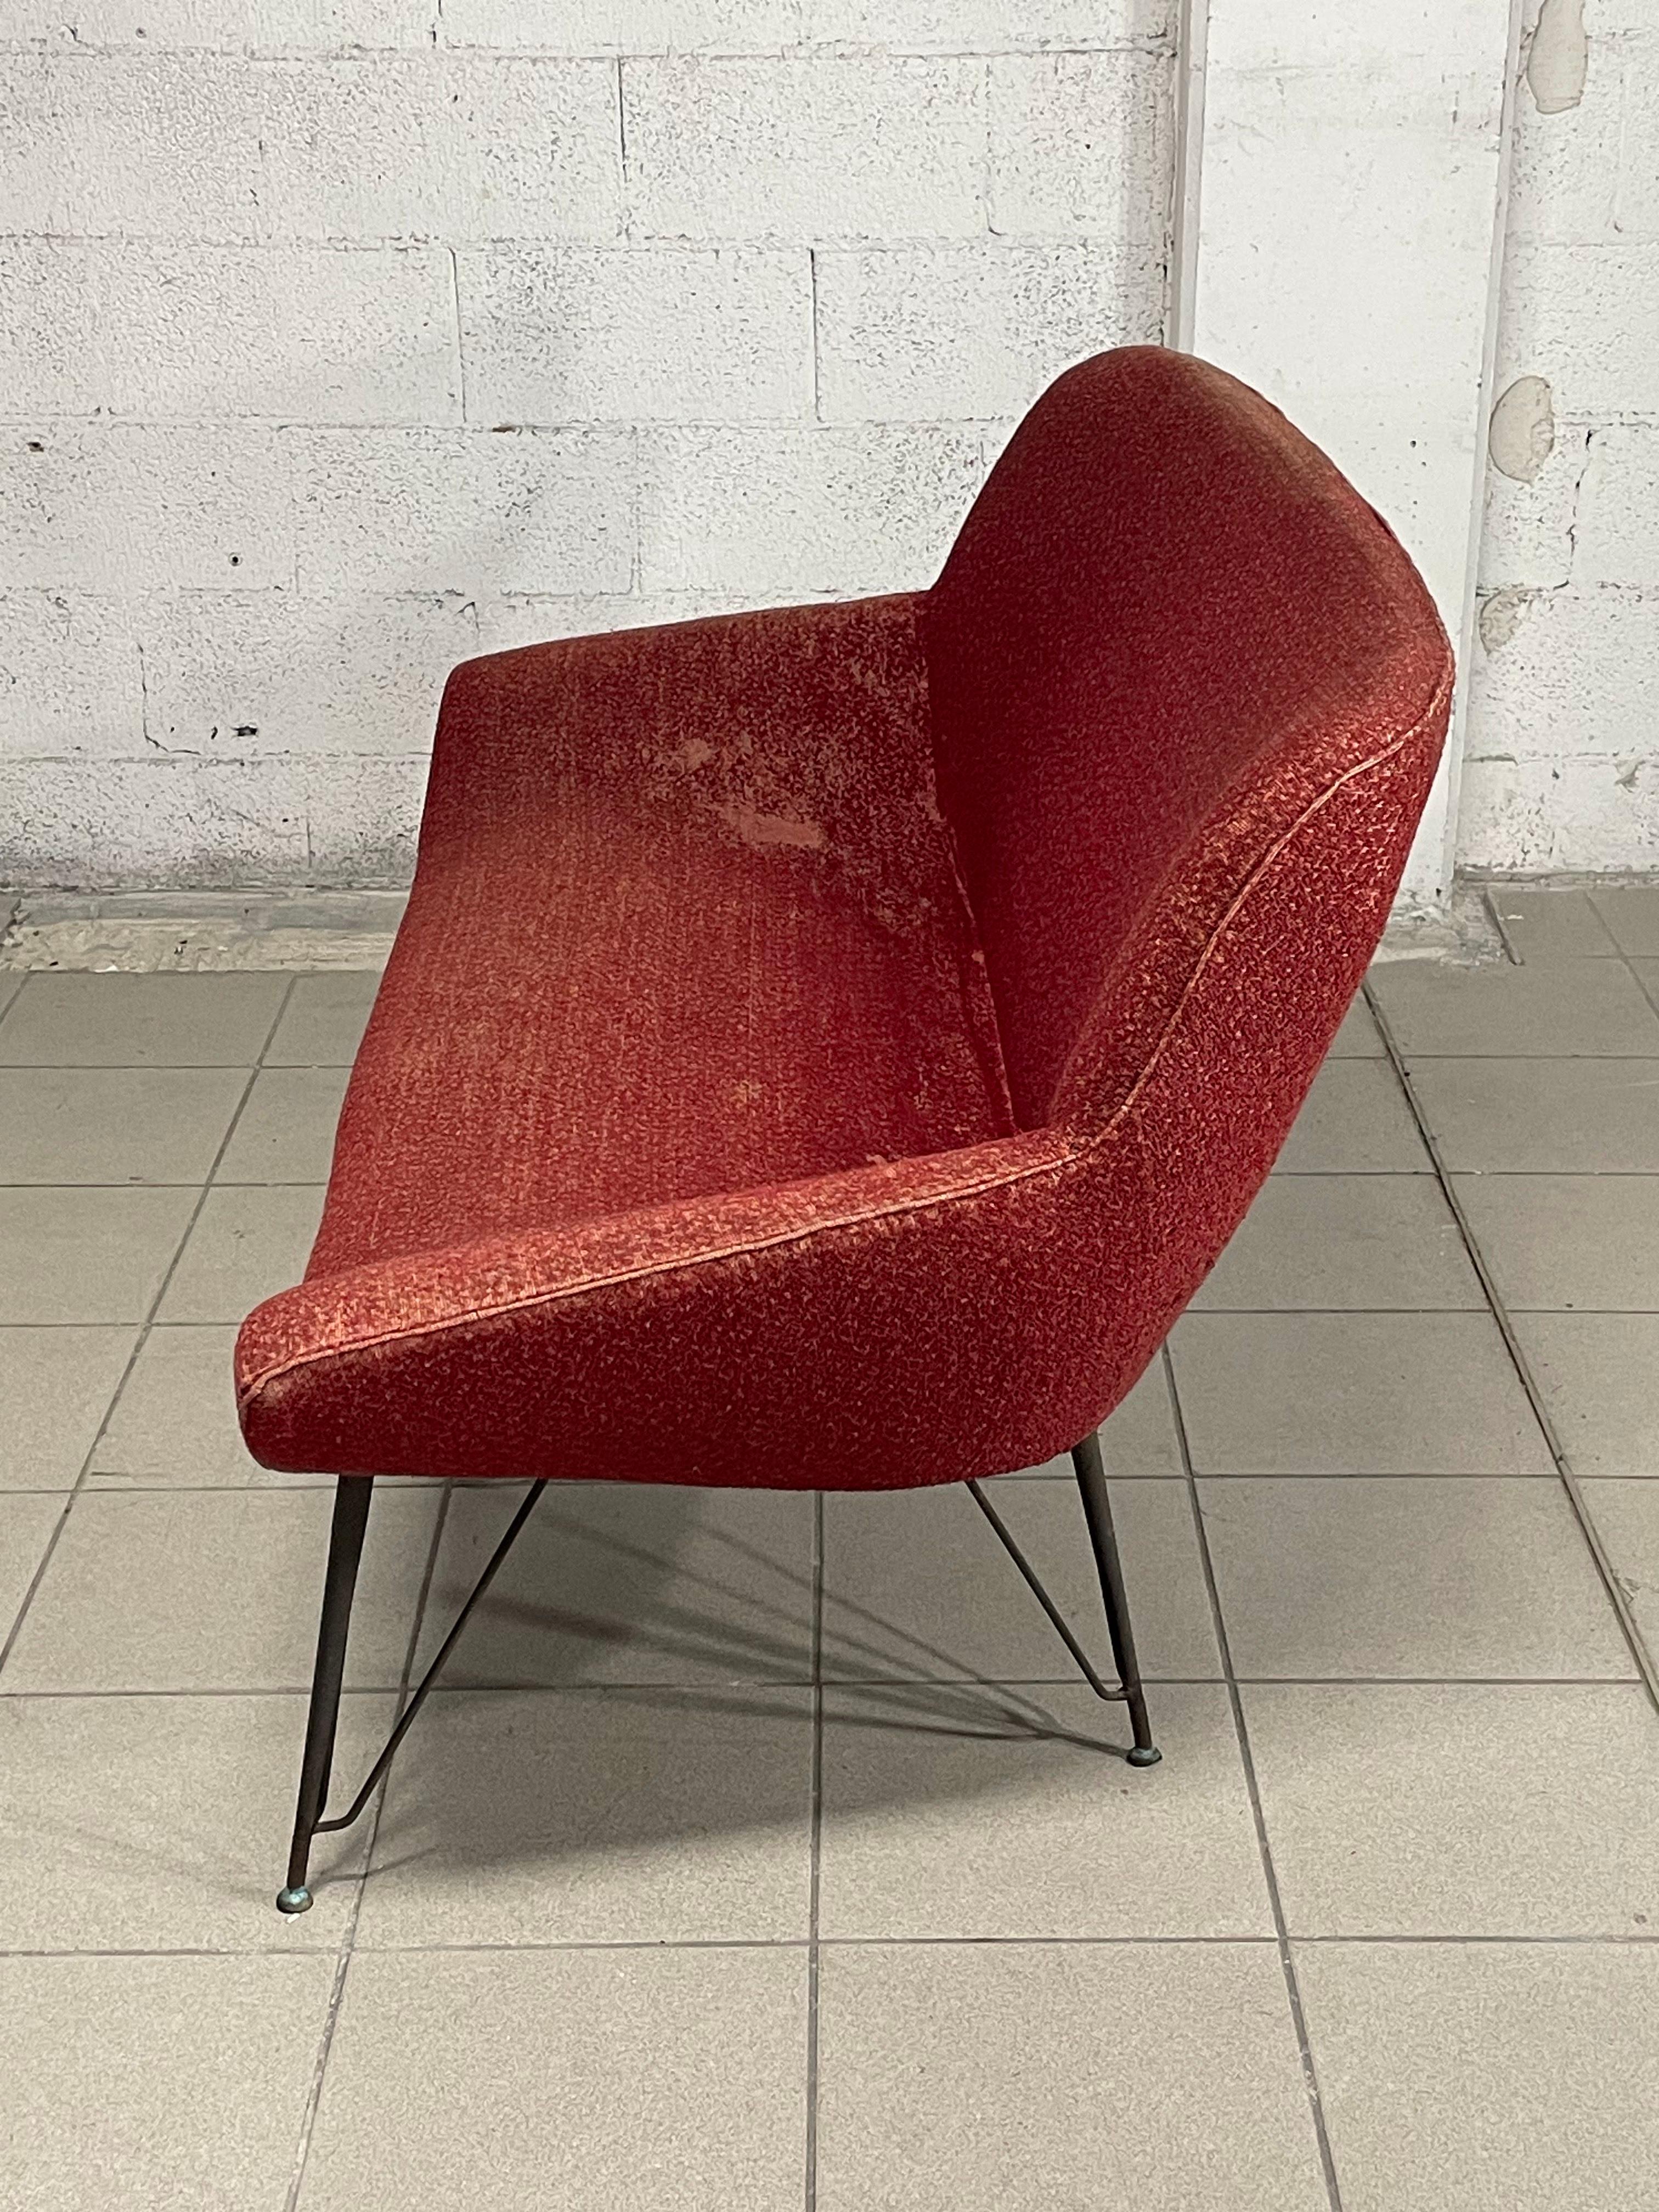 Sofa aus den 1950er Jahren mit schwarz lackiertem Eisengestell und Messingfüßen.
Originaler roter Bärenumschlag.

Um die Leistung dieses Möbels zu verbessern, empfehlen wir, die Polsterung zu erneuern.